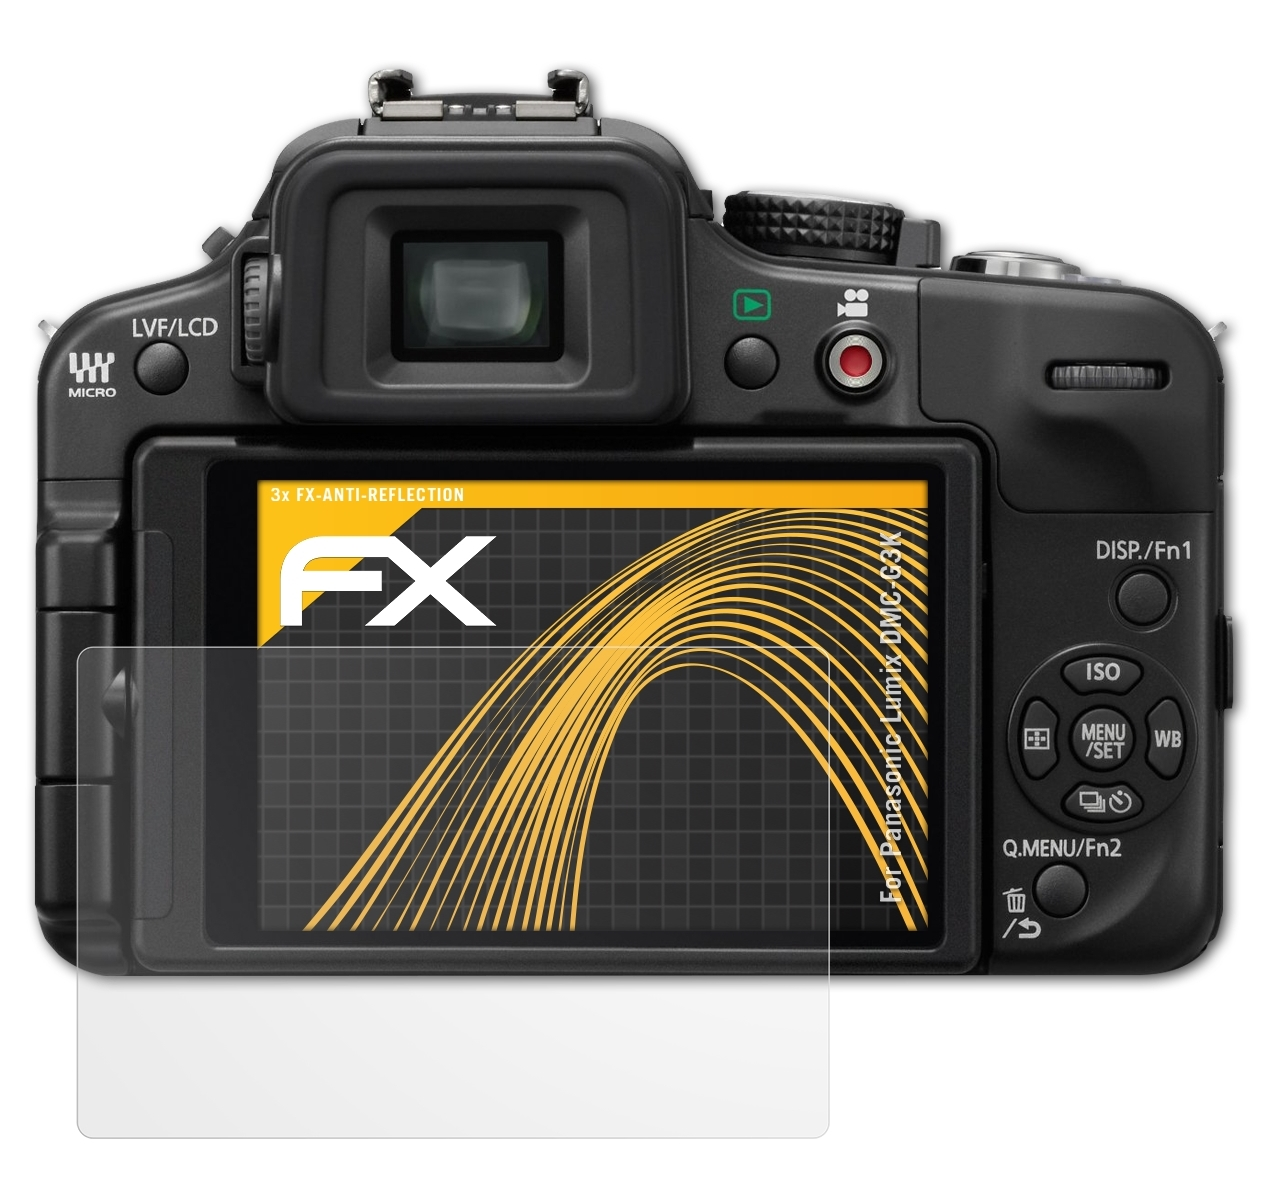 Panasonic FX-Antireflex 3x ATFOLIX Lumix DMC-G3K) Displayschutz(für